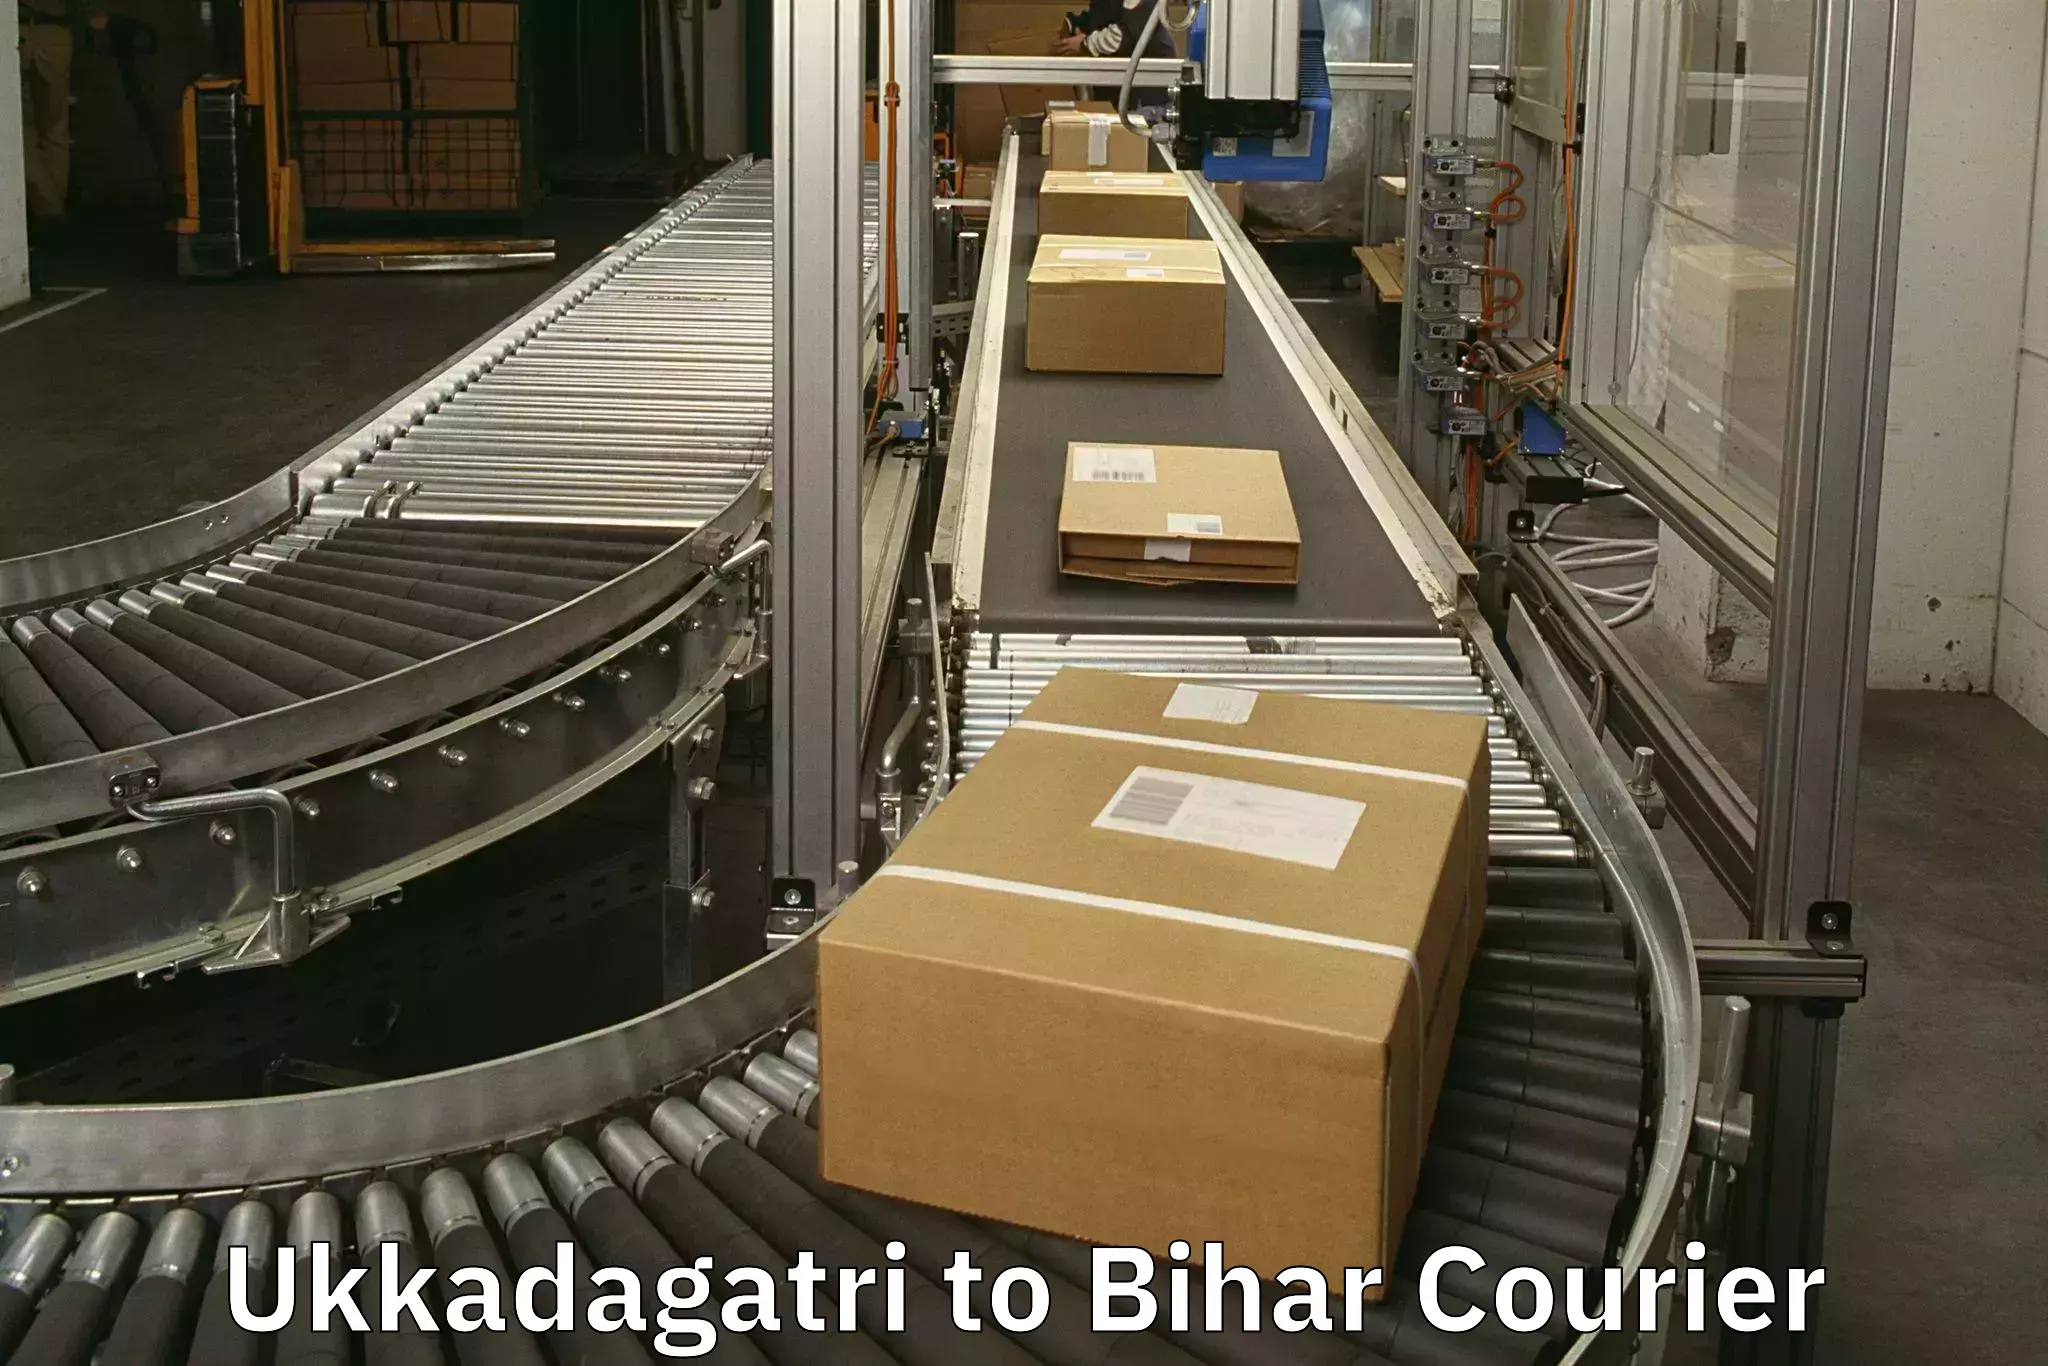 Luggage shipment processing Ukkadagatri to Bihar